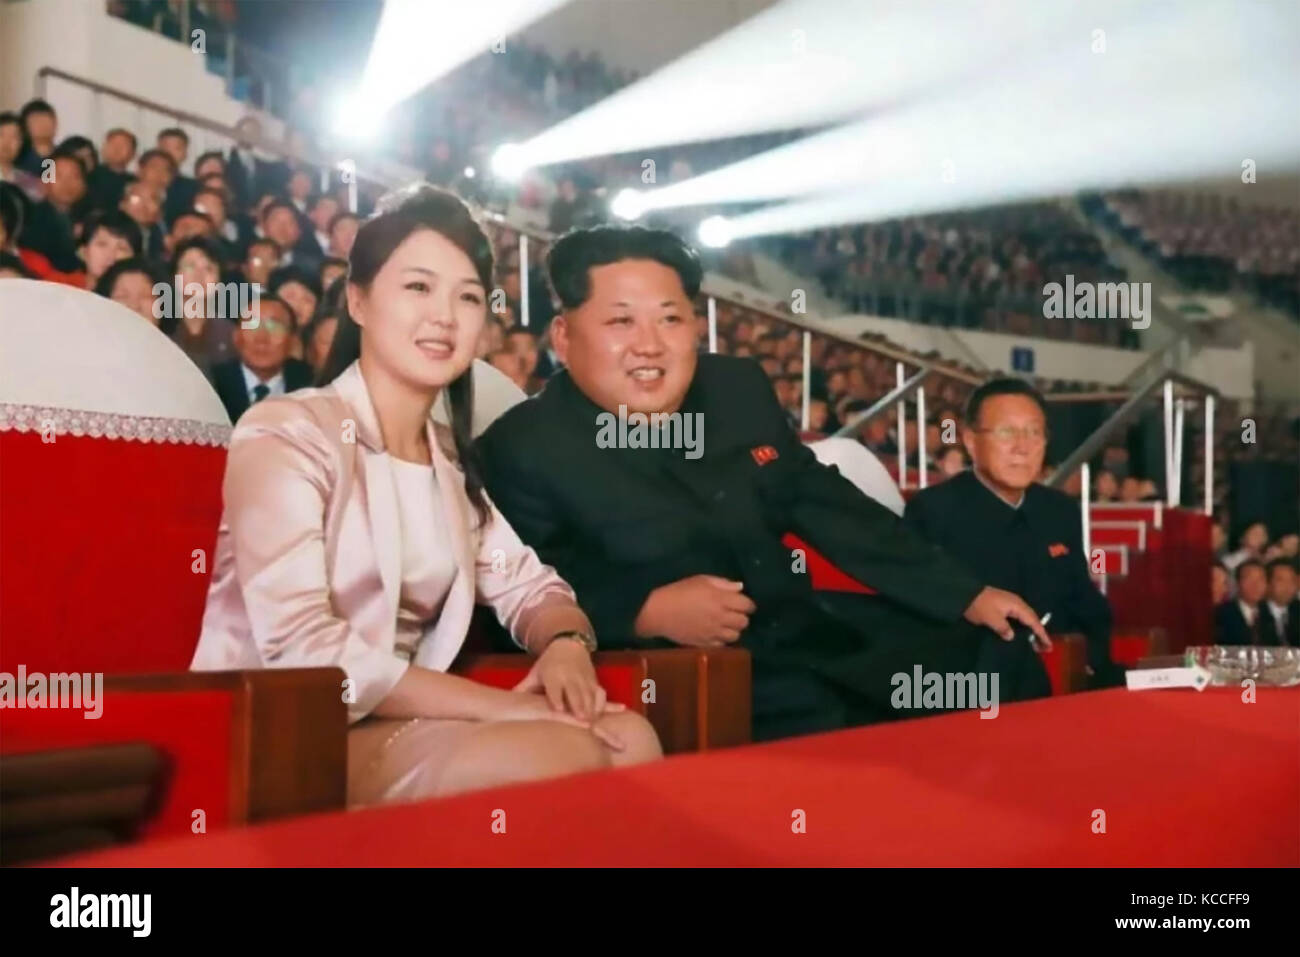 KIM JONG-un líder de Corea del Norte con su esposa Ri Sol-ju en una foto oficial publicado en 2017 por KCNA (la Agencia Central de Noticias de Corea del Norte). Foto de stock